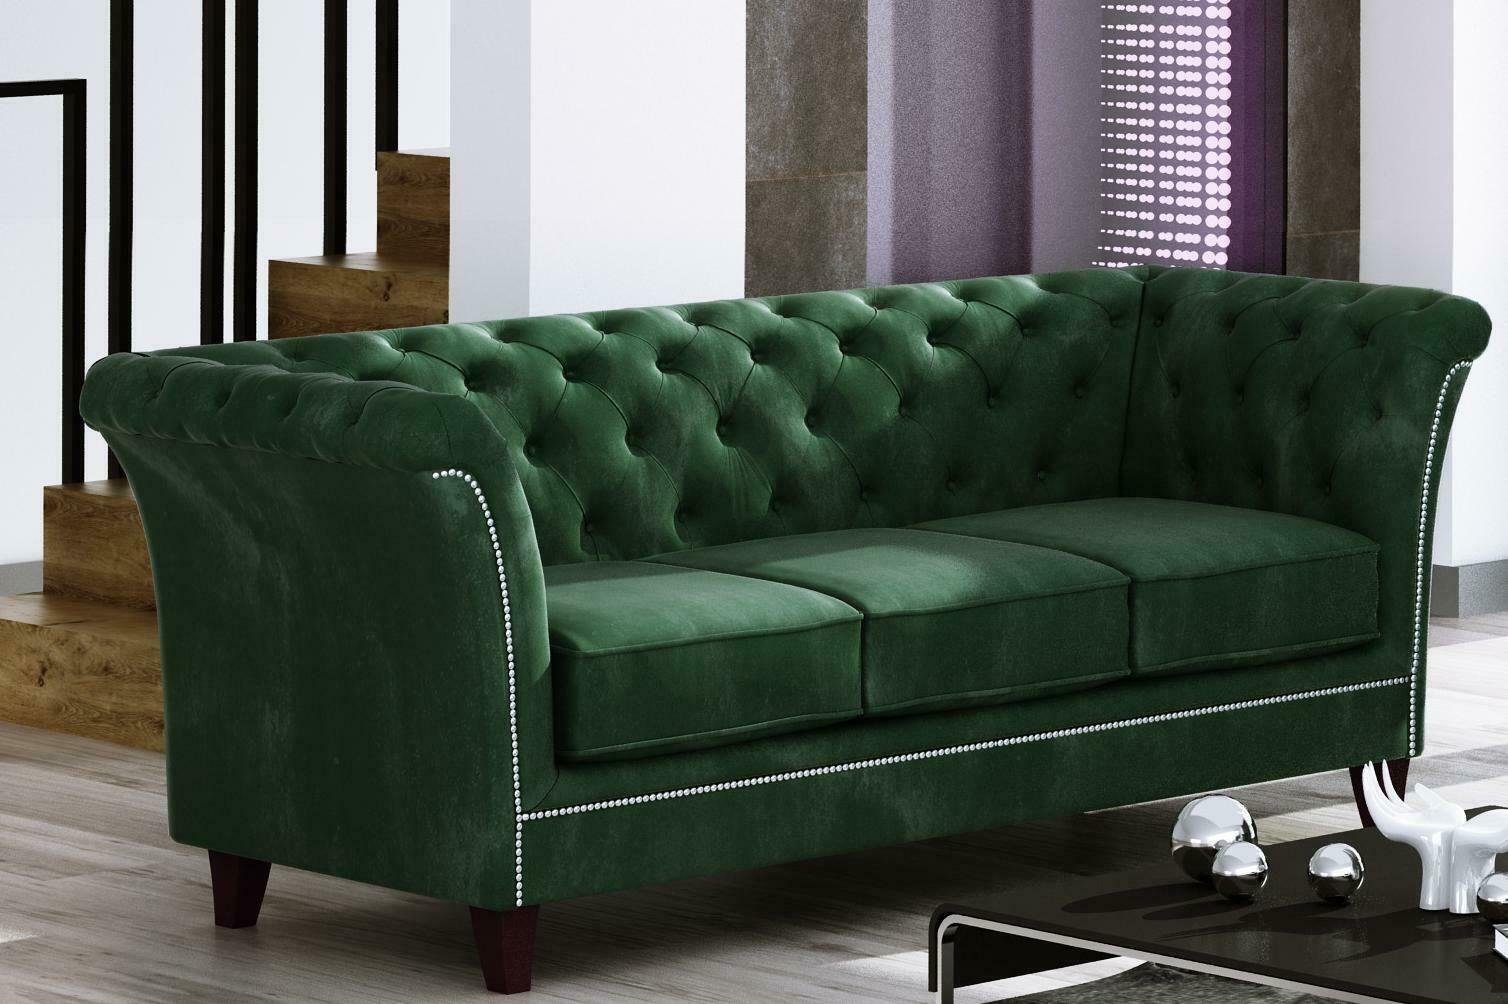 JVmoebel Sofa Grüner Dreisitzer Chesterfield Möbel Luxus 3-Sitzer Couch Edel Neu, Made in Europe